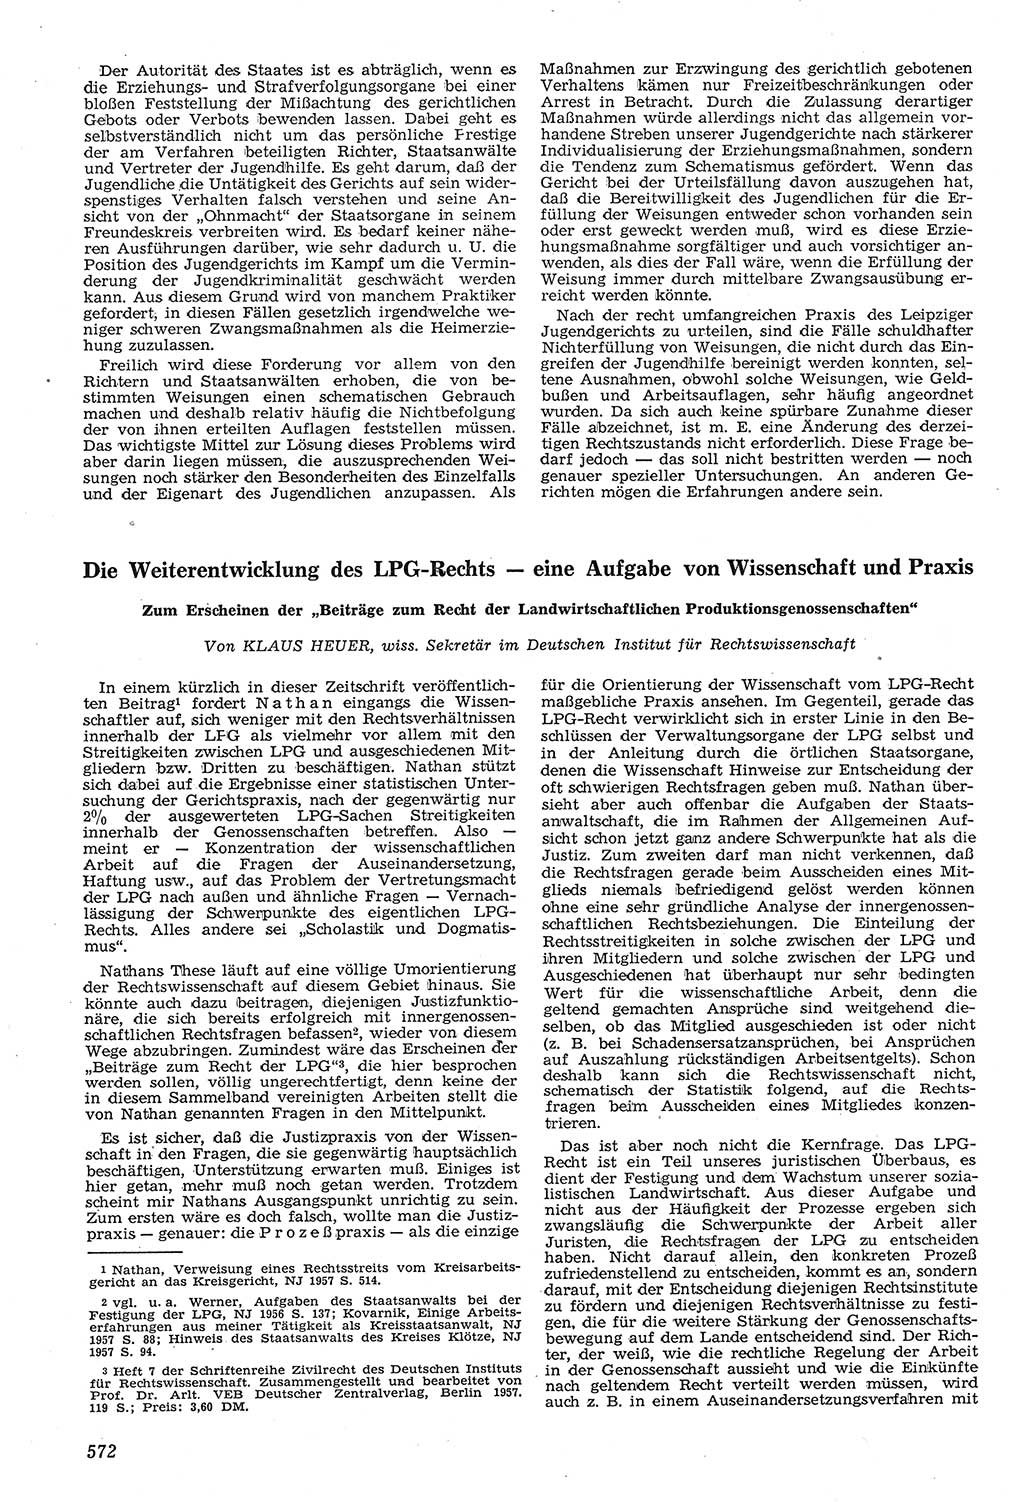 Neue Justiz (NJ), Zeitschrift für Recht und Rechtswissenschaft [Deutsche Demokratische Republik (DDR)], 11. Jahrgang 1957, Seite 572 (NJ DDR 1957, S. 572)